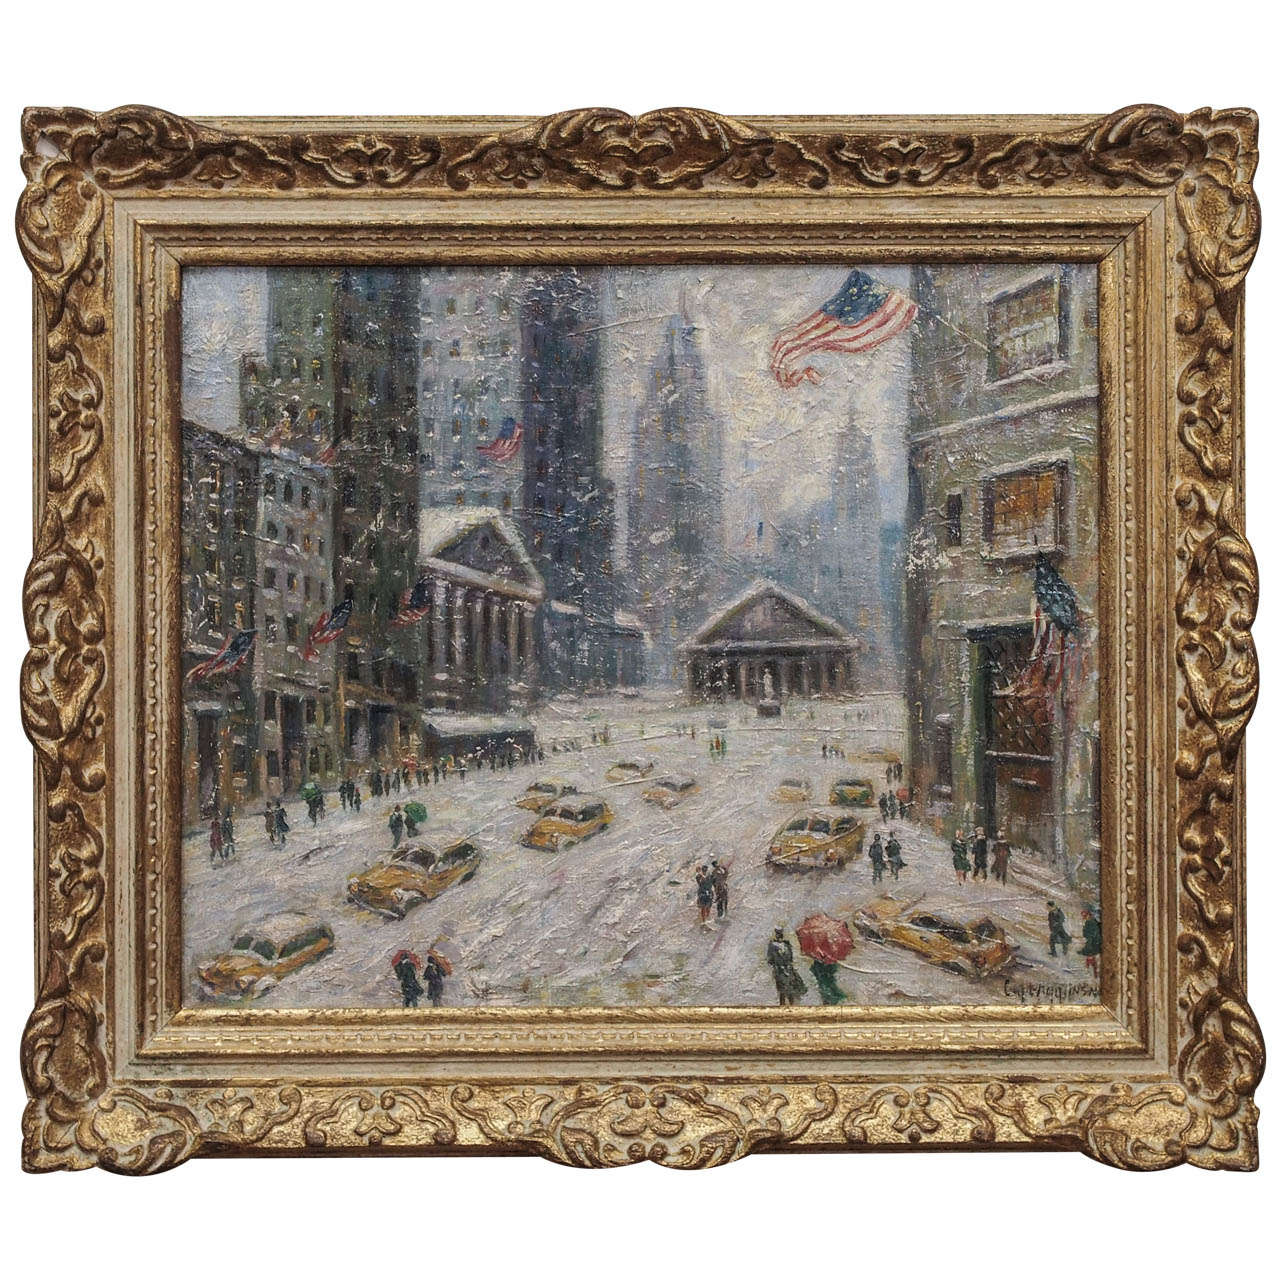 “Winter on Wall Street” by Guy Carleton Wiggins